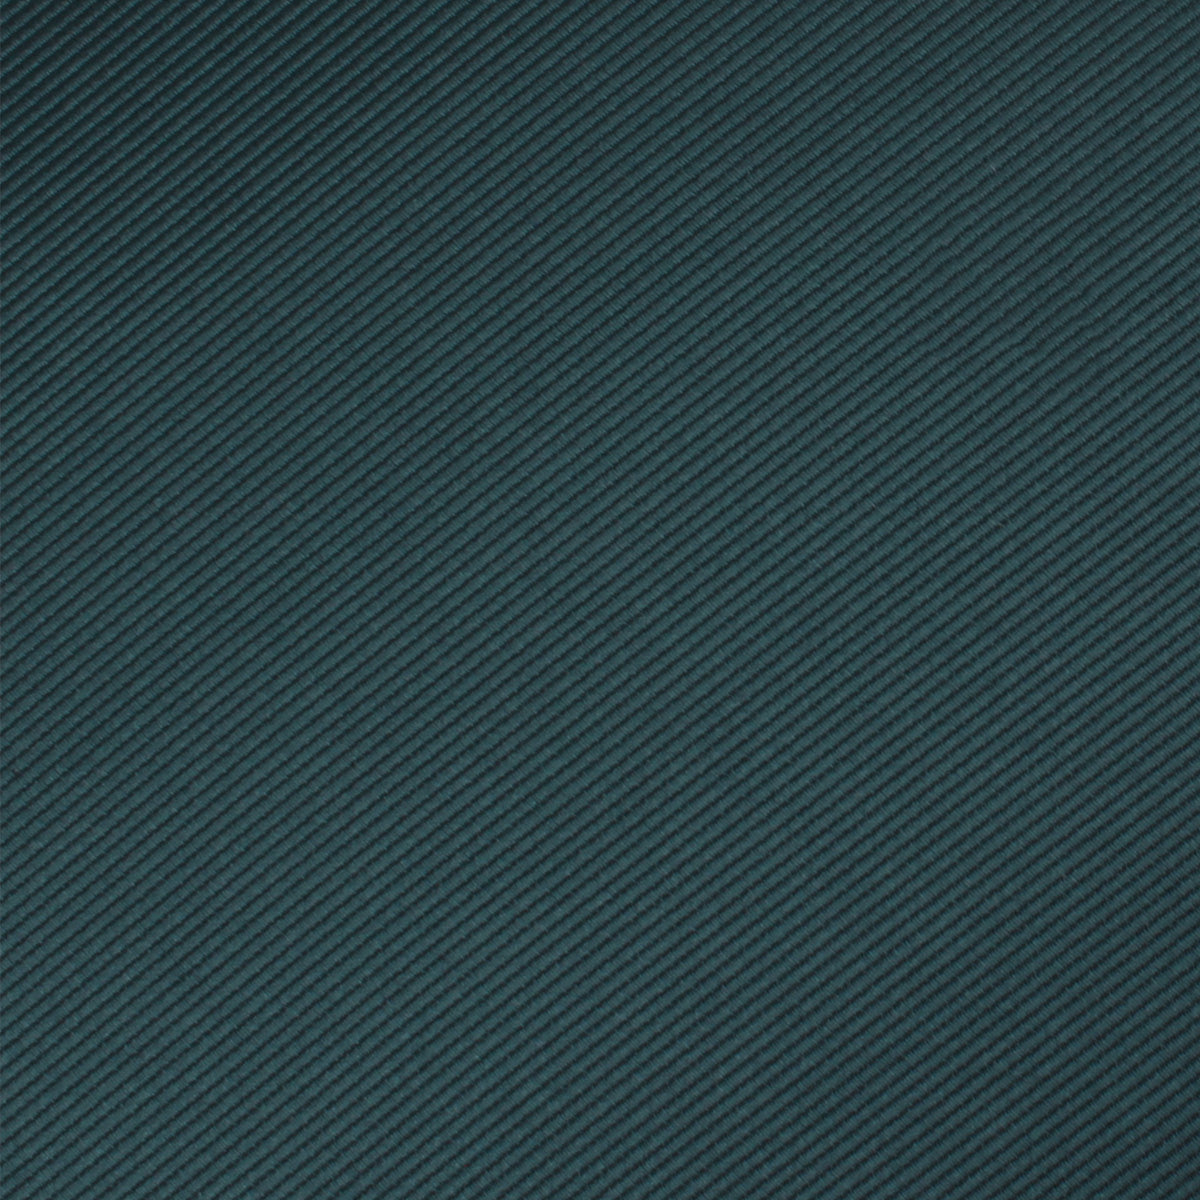 Juniper Dark Green Twill Bow Tie Fabric